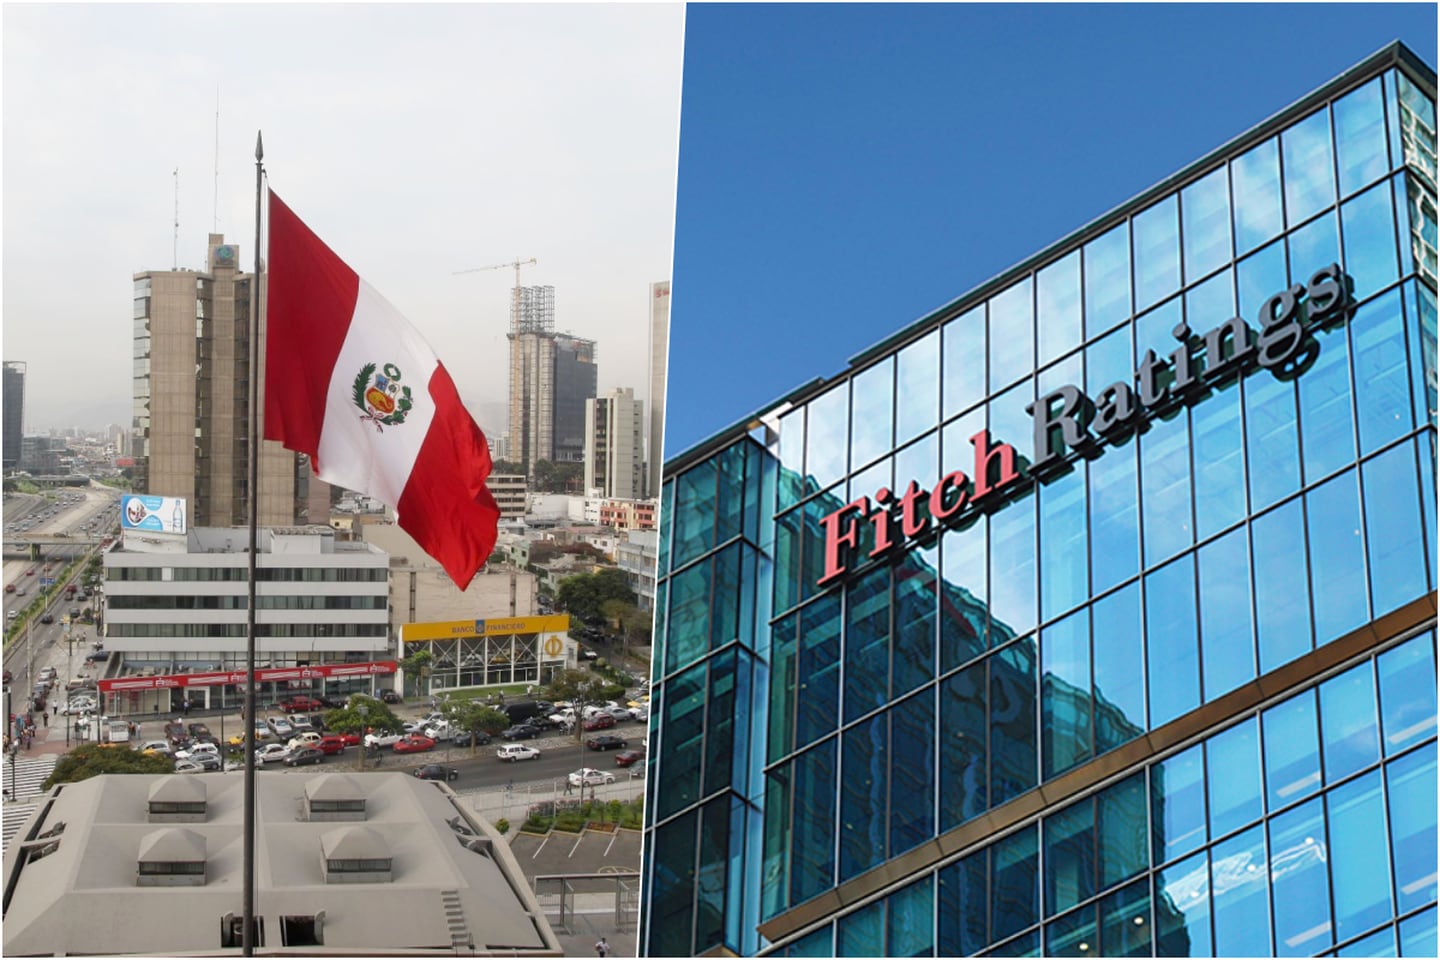 Fitch señaló la creciente volatilidad política en Perú fue clave para la decisión de eliminar la perspectiva positiva para la credibilidad de la política macro y fiscal del país en su calificación, lo que llevó a la rebaja a 'BBB/Estable'.